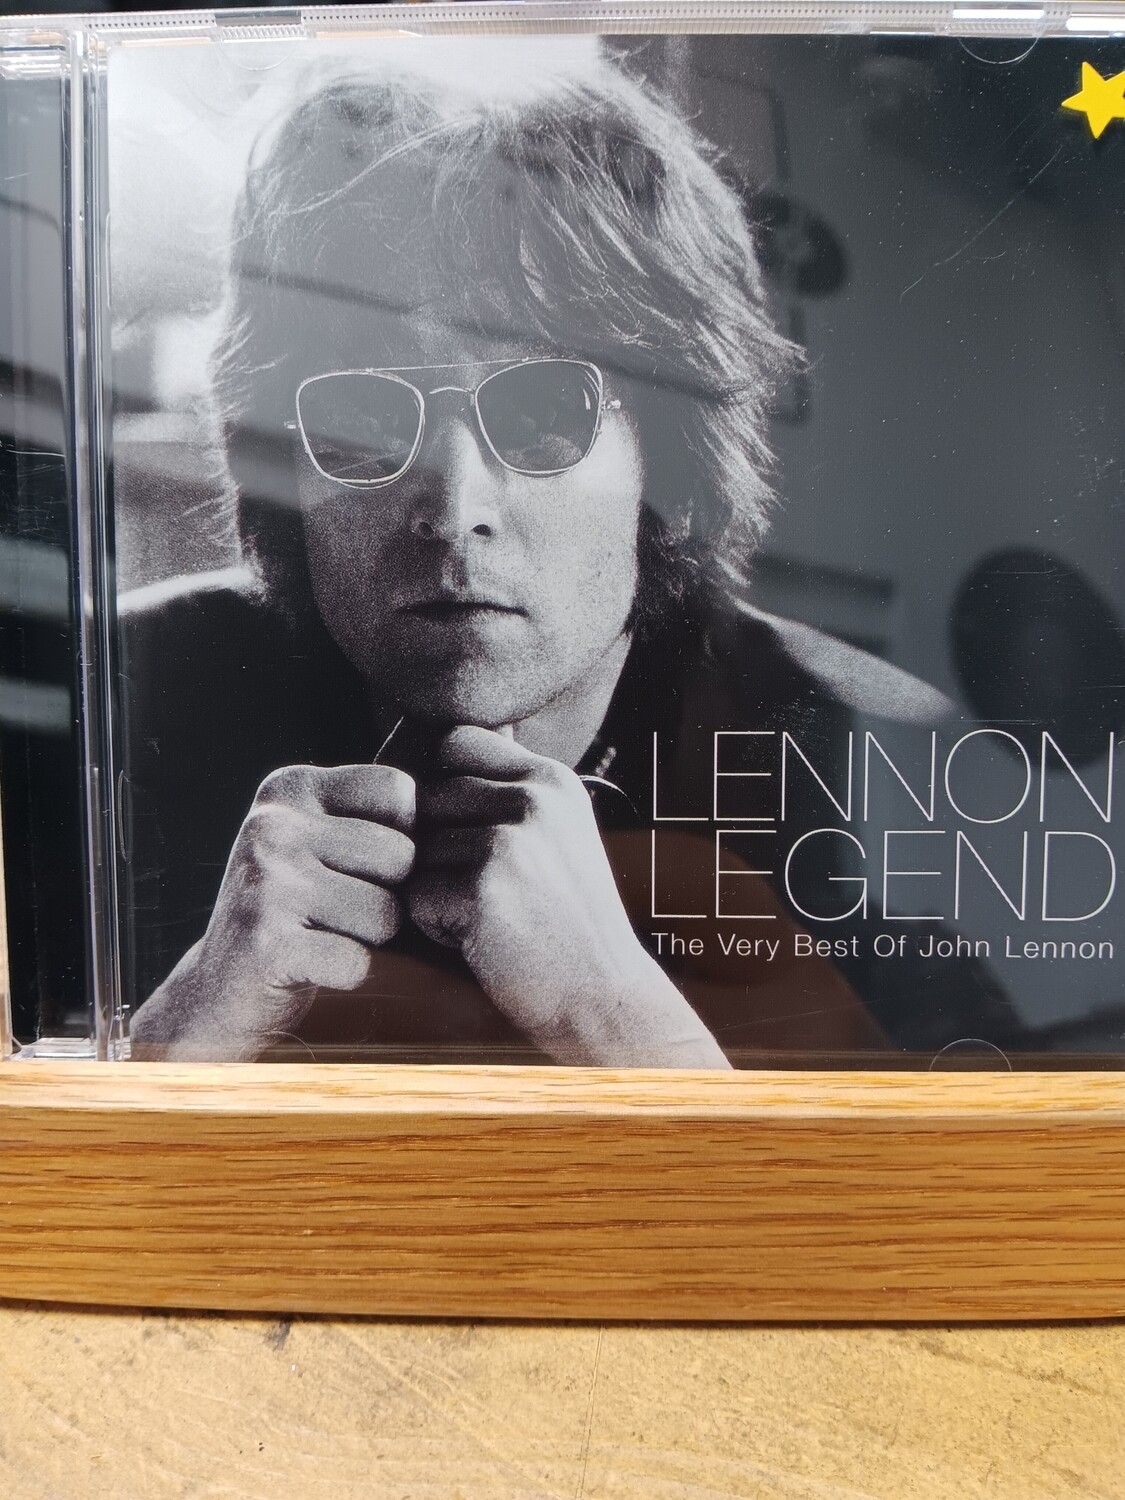 JOHN LENNON - Legend The very best of John Lennon (CD)